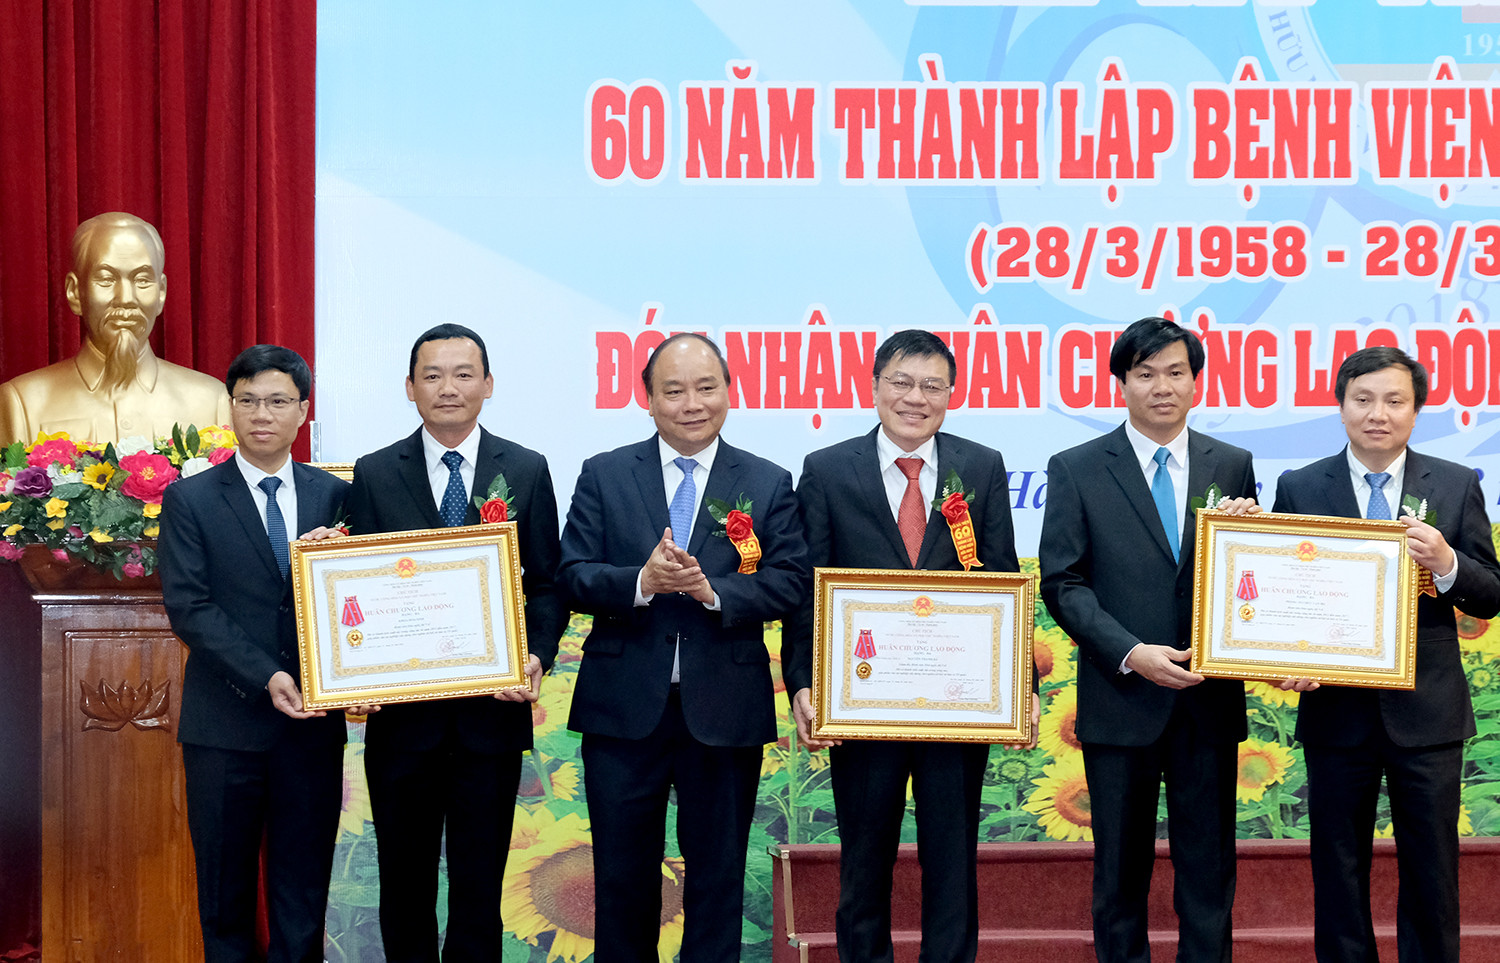 Thủ tướng dự lễ kỷ niệm 60 năm thành lập Bệnh viện Hữu nghị Việt -Xô